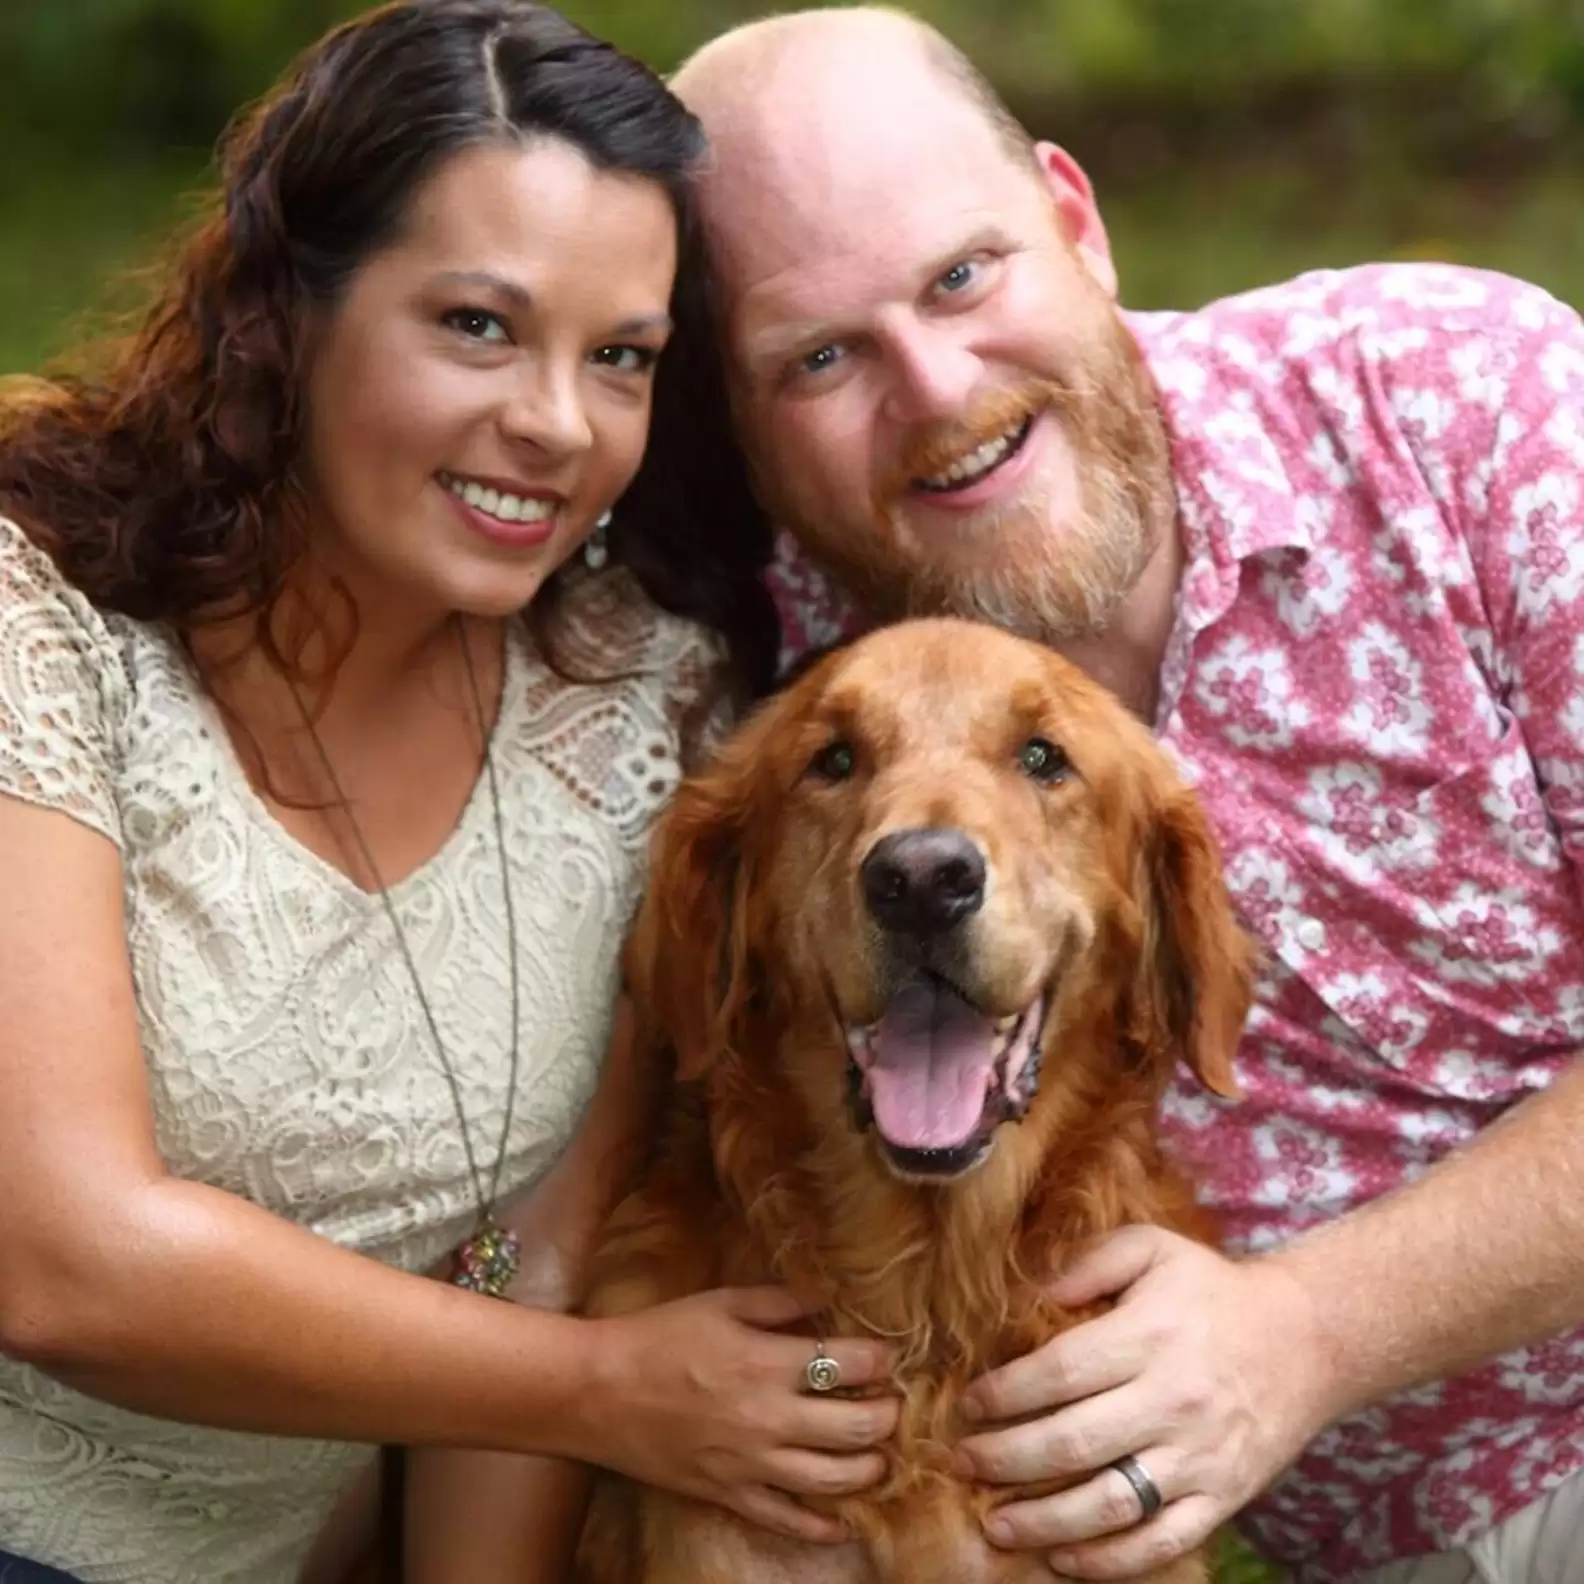 "의사는 암에 걸린 강아지가 더 이상 가망이 없다고 했고" 쉽게 포기할 수 없었던 가족은 강아지를 위해 특별한 이벤트를 준비합니다! 이 모습에 감동한 사람들은 강아지에게 사랑을 나누어 주었고..